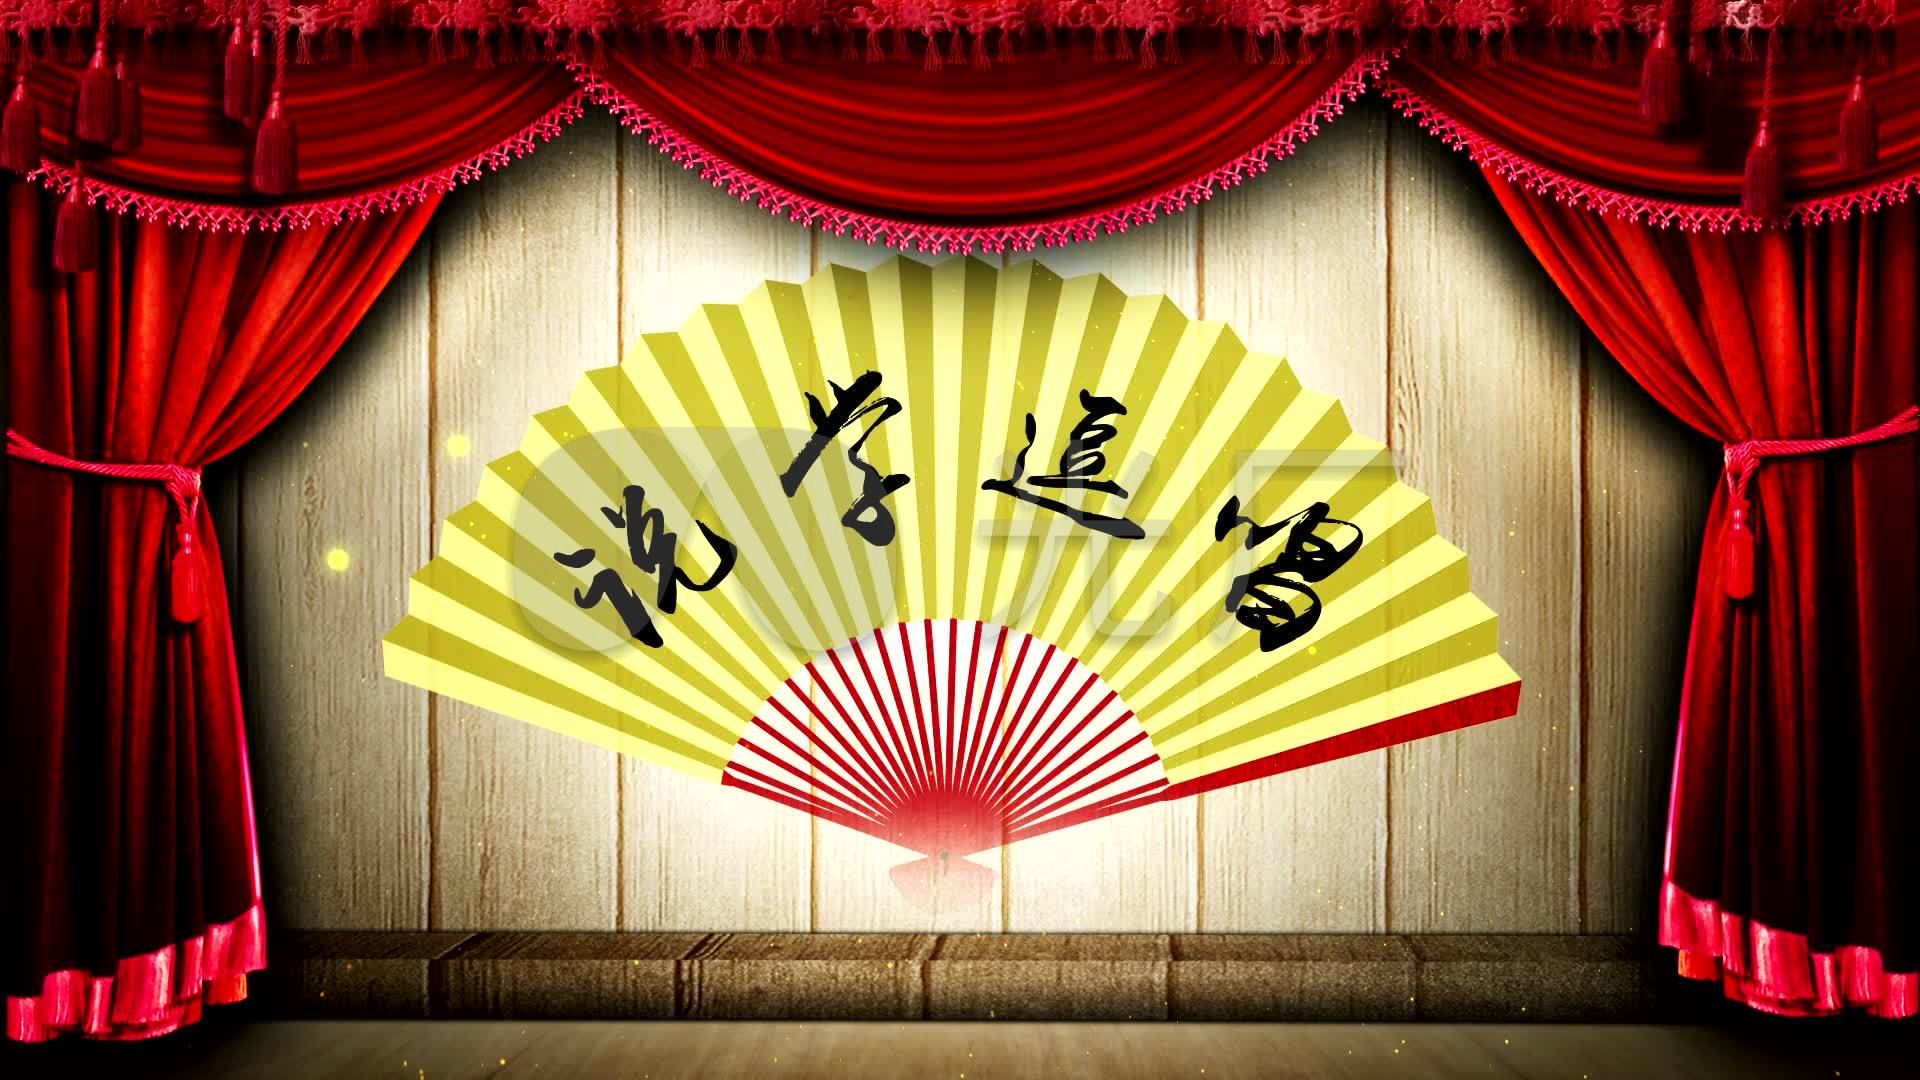 原创古典中国风led舞台相声动态背景视频_192